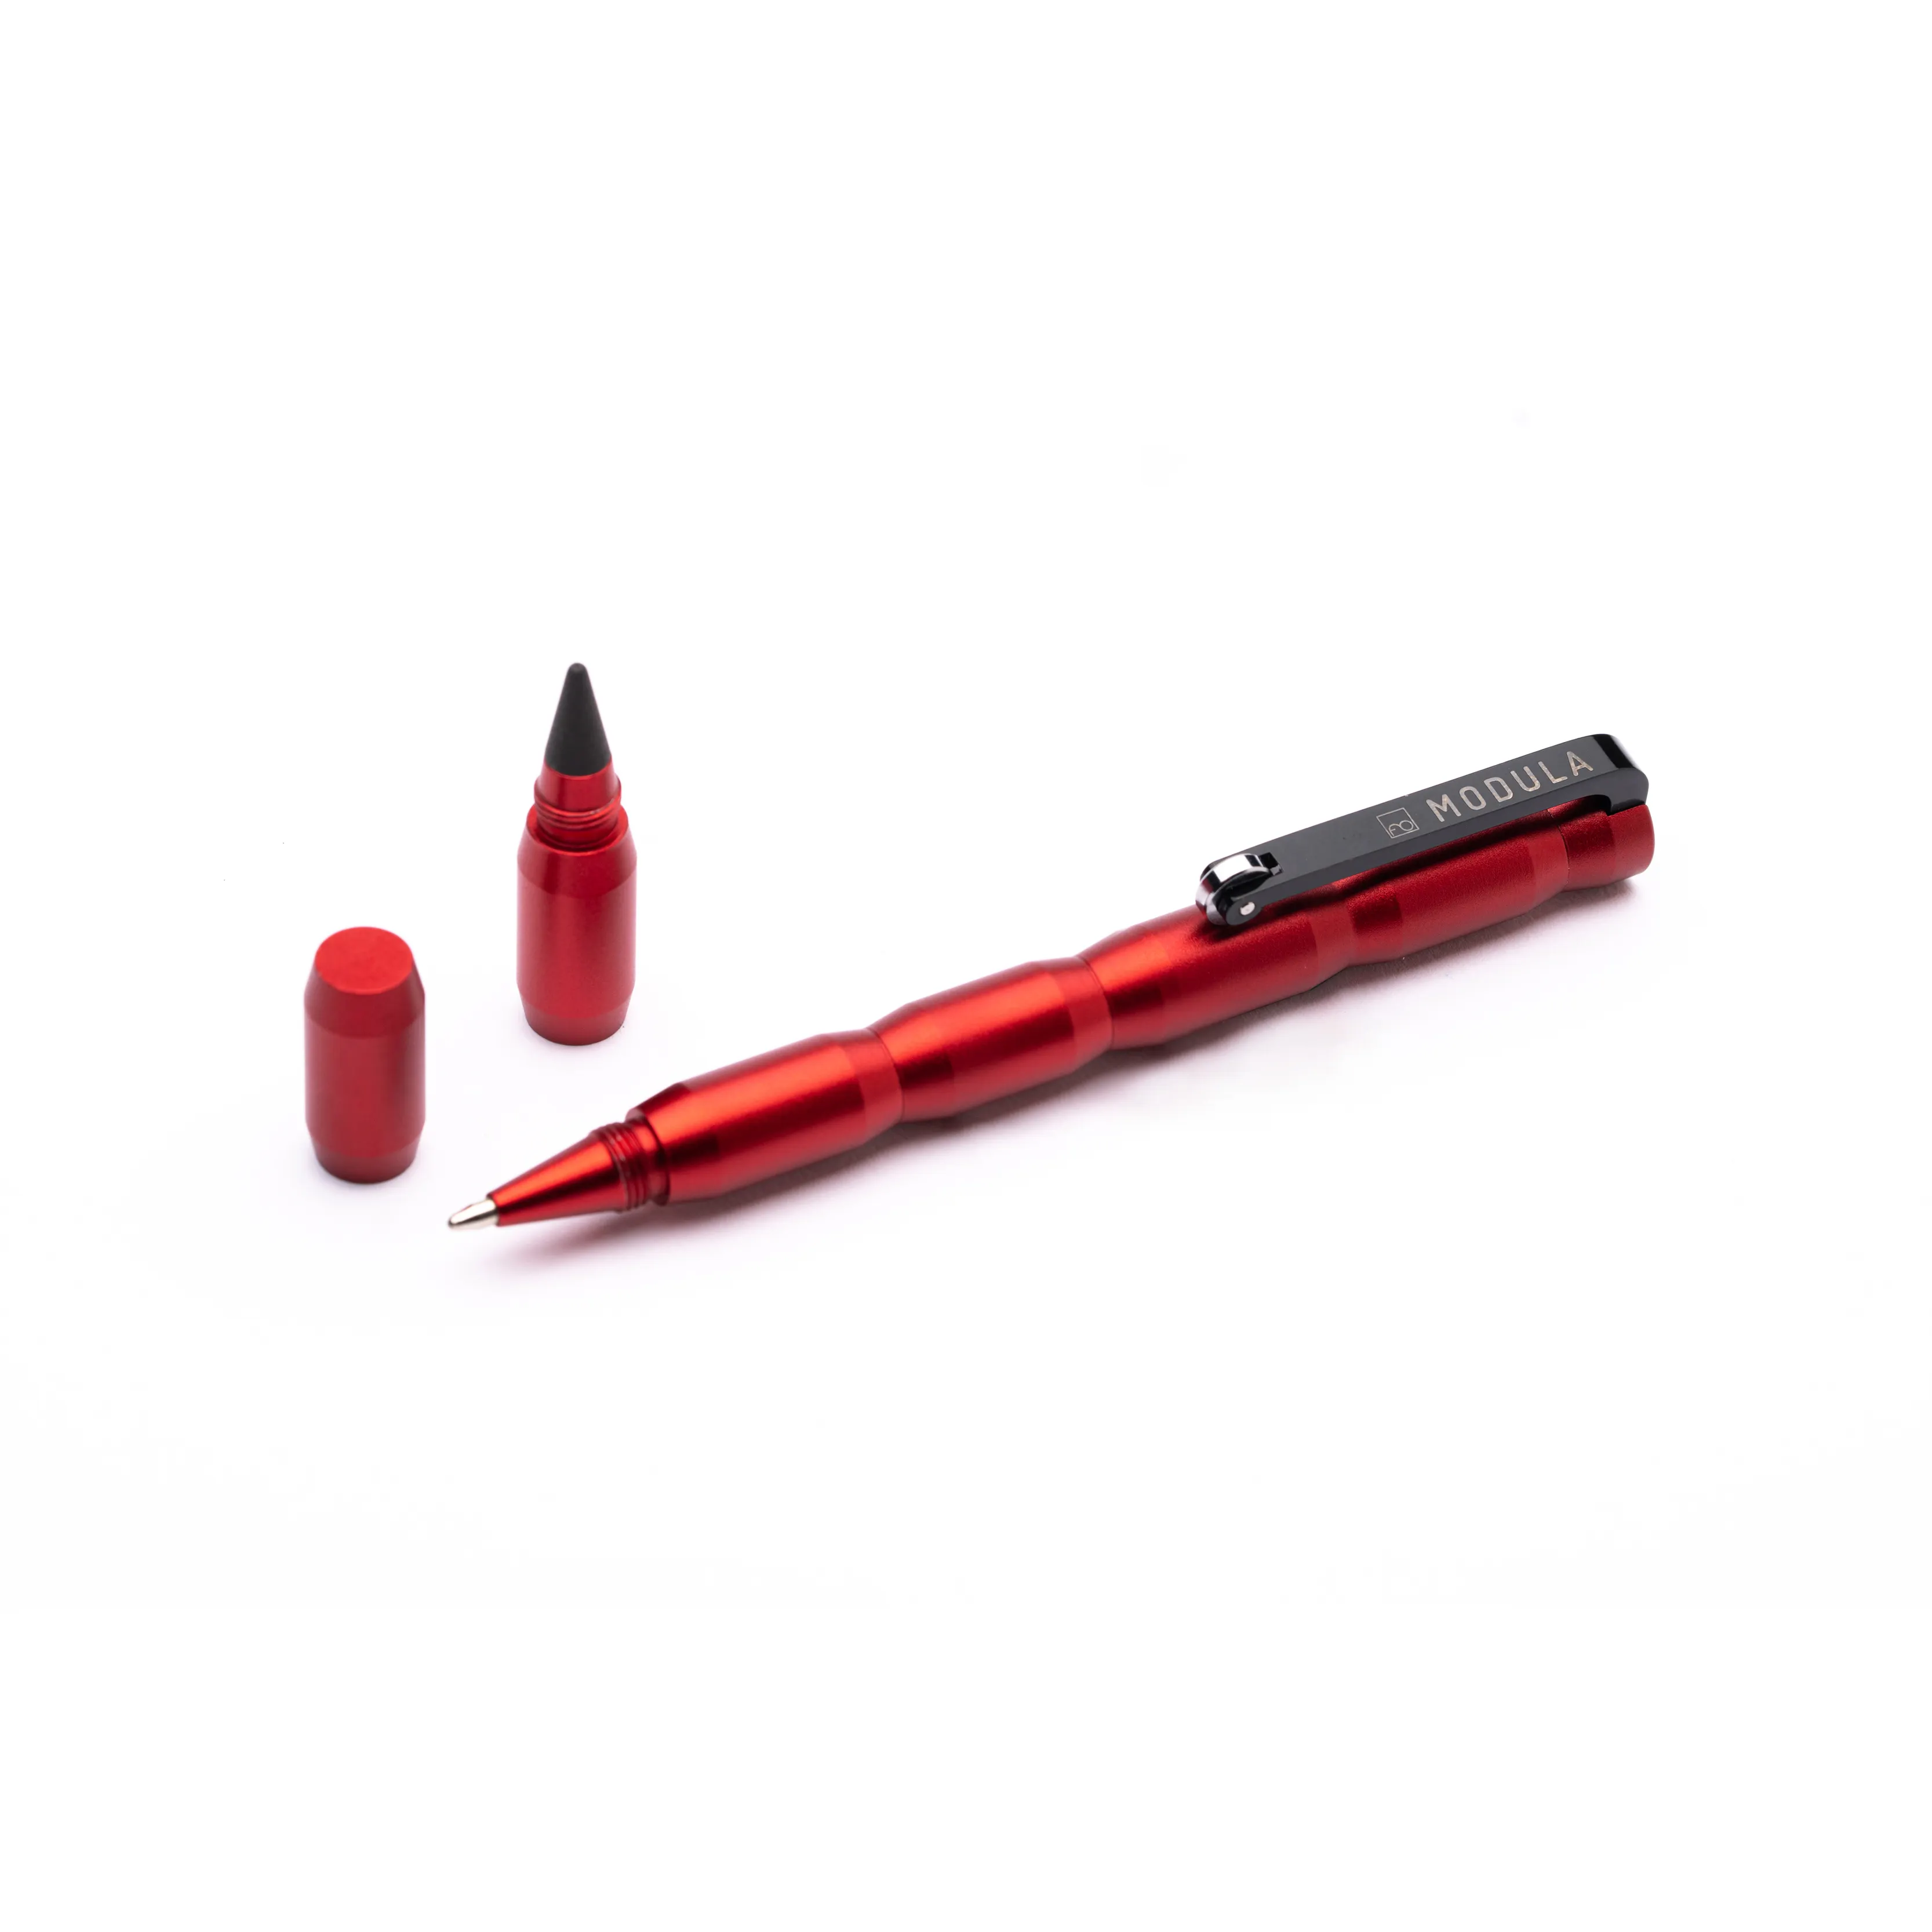 Mới sáng tạo Modular Pen với Ballpoint Refill và có thể thay thế Graphite tip thiết kế trong ý cho quà tặng doanh nghiệp Modula Đỏ